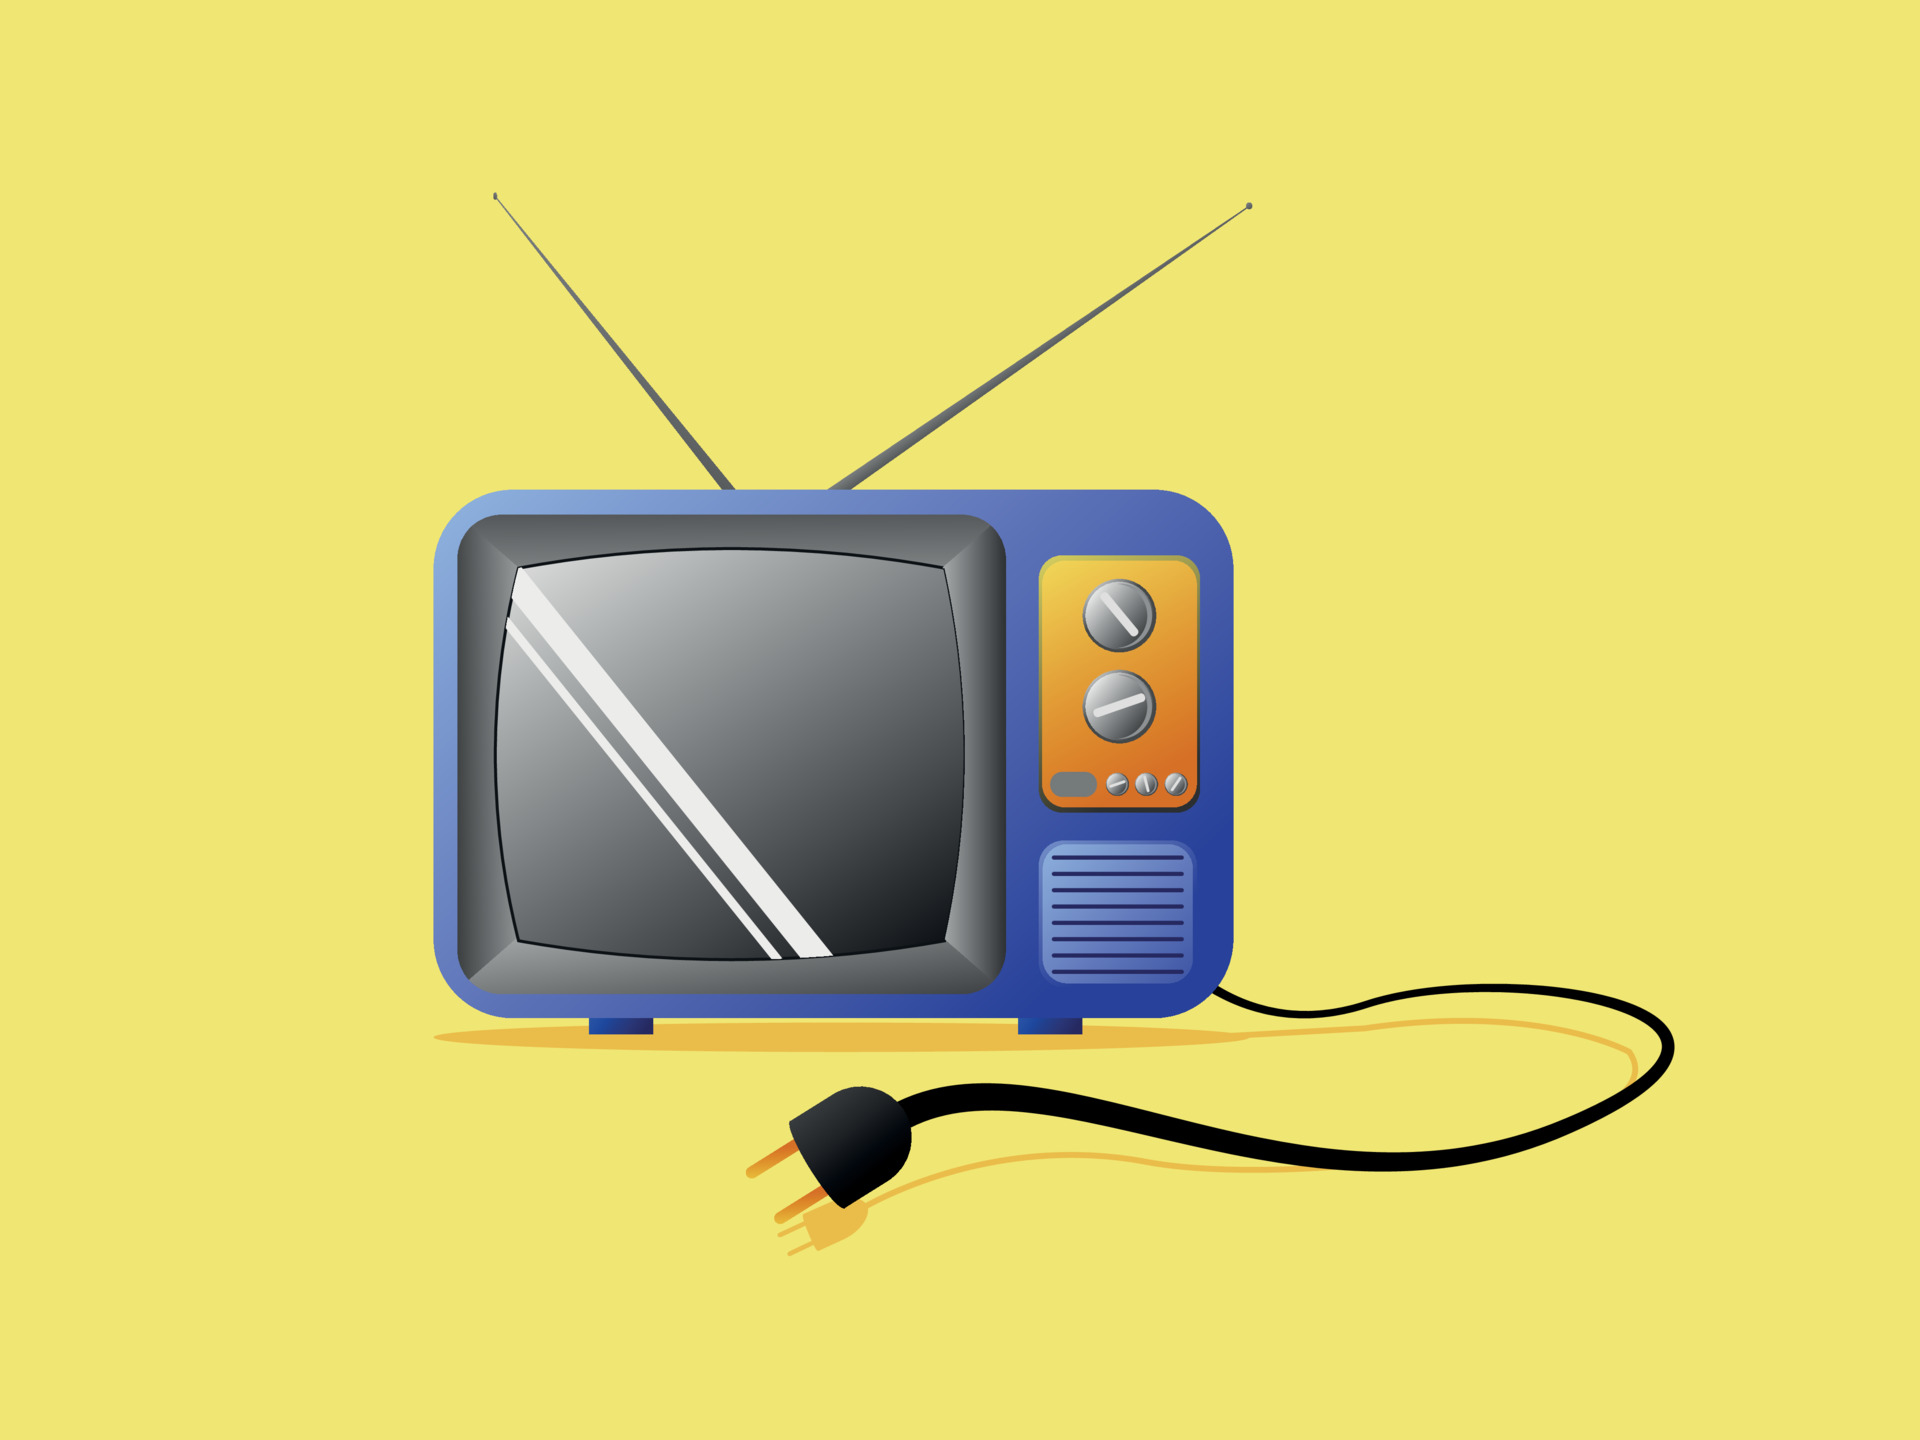 Na obrázku je retro televízor na žltom pozadí. Televízor má modrý rám, anténu, sivú obrazovku a oranžové ovládacie tlačidlá. Z televízora vychádza čierny elektrický kábel s viditeľnou zástrčkou